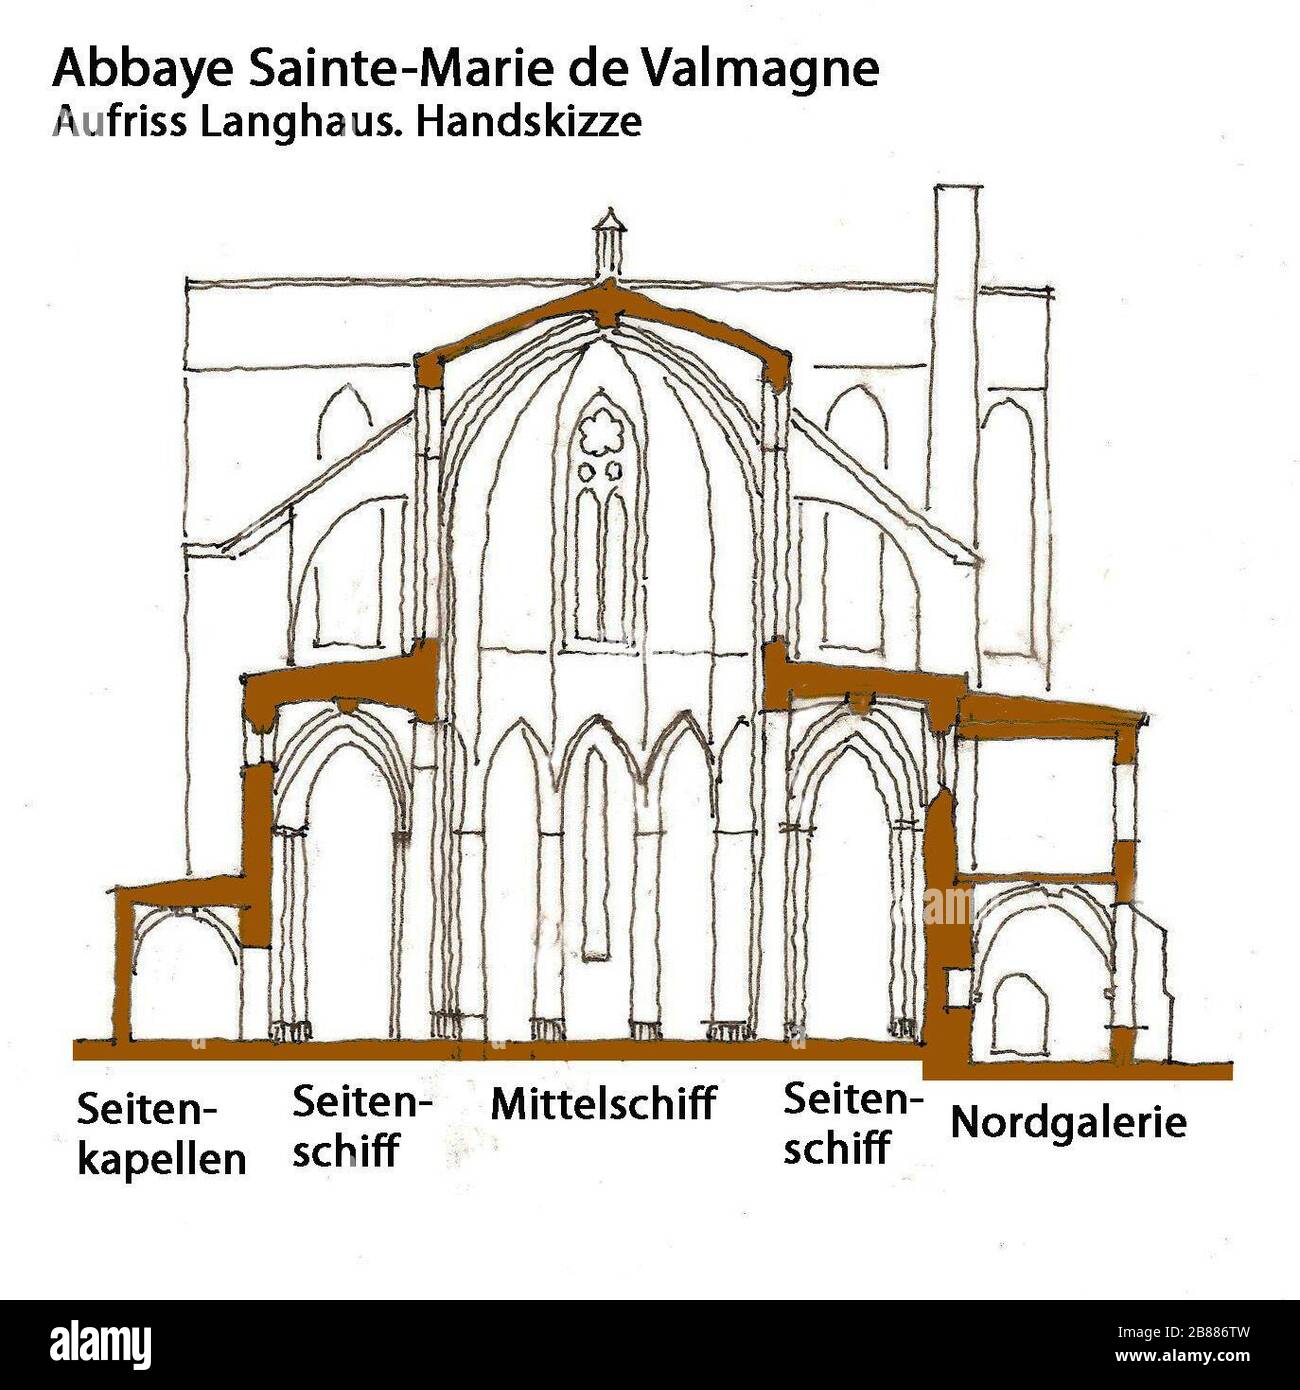 'Deutsch: Abbaye de Valmagne, Aufriss Langhaus, Handskizze; 22 March 2011; Own work (Original text:  selbst gezeichnet); Jochen Jahnke; ' Stock Photo